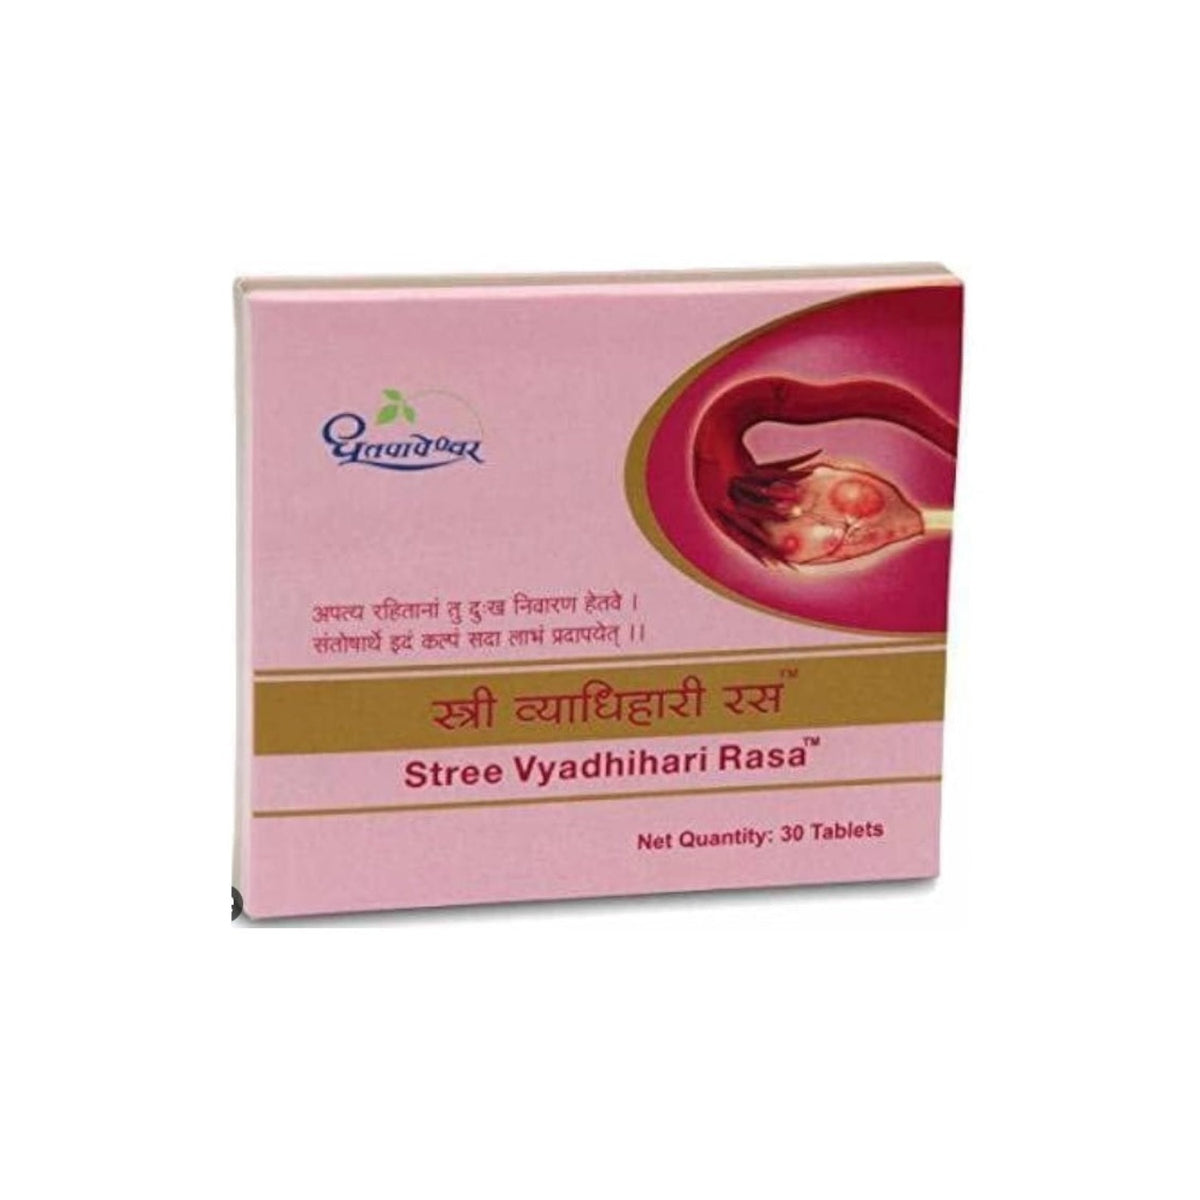 Dhootapapeshwar Ayurvedischer Stree Vyadhihari Rasa 30 Tabletten